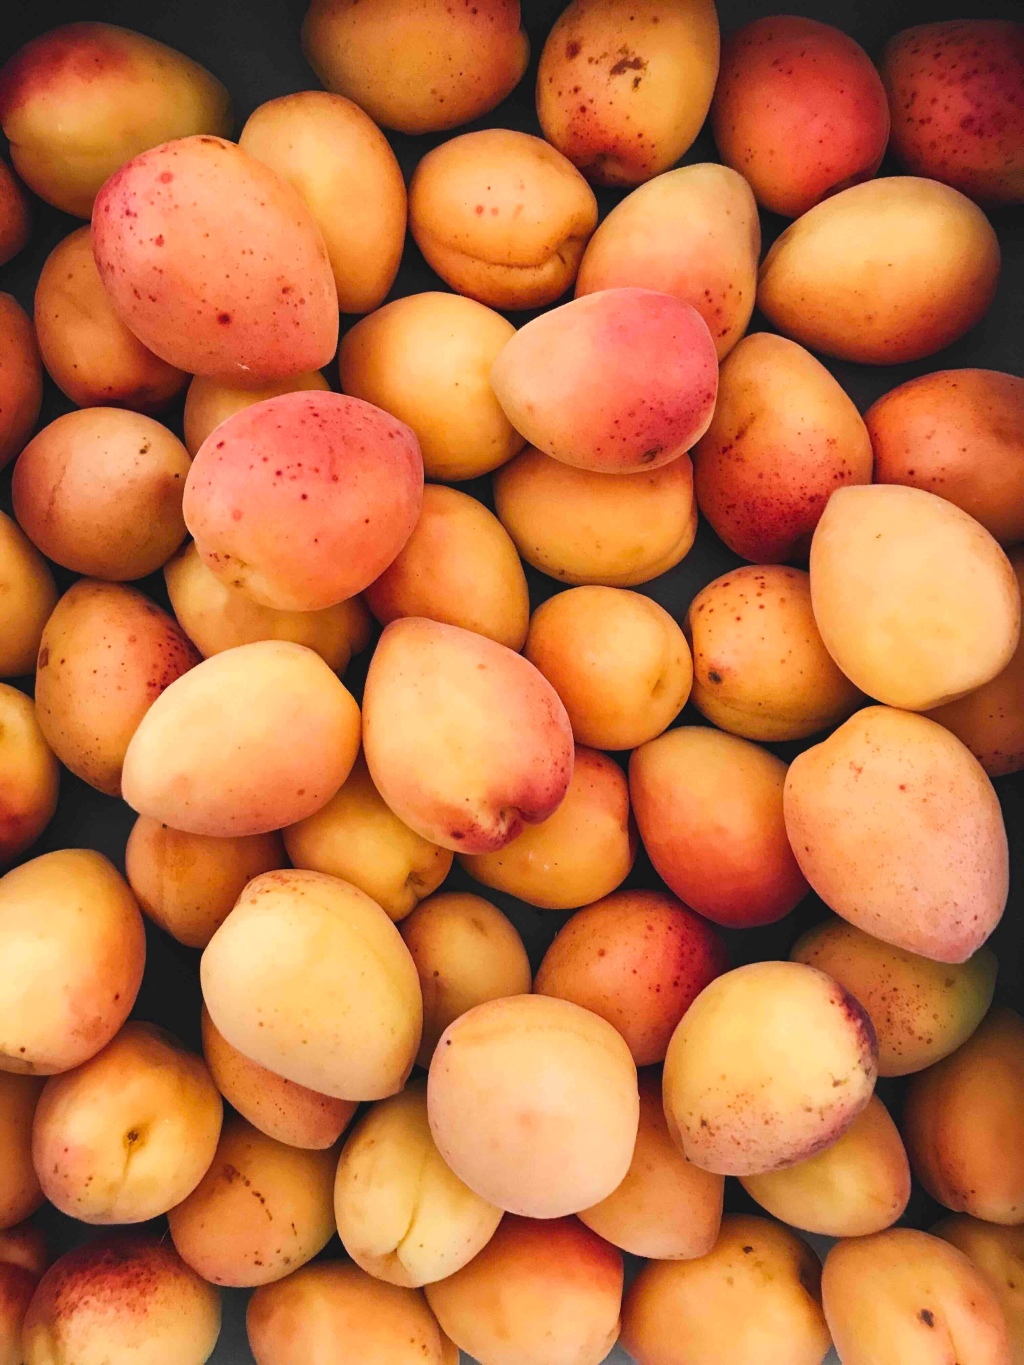 Mangoes: A poem